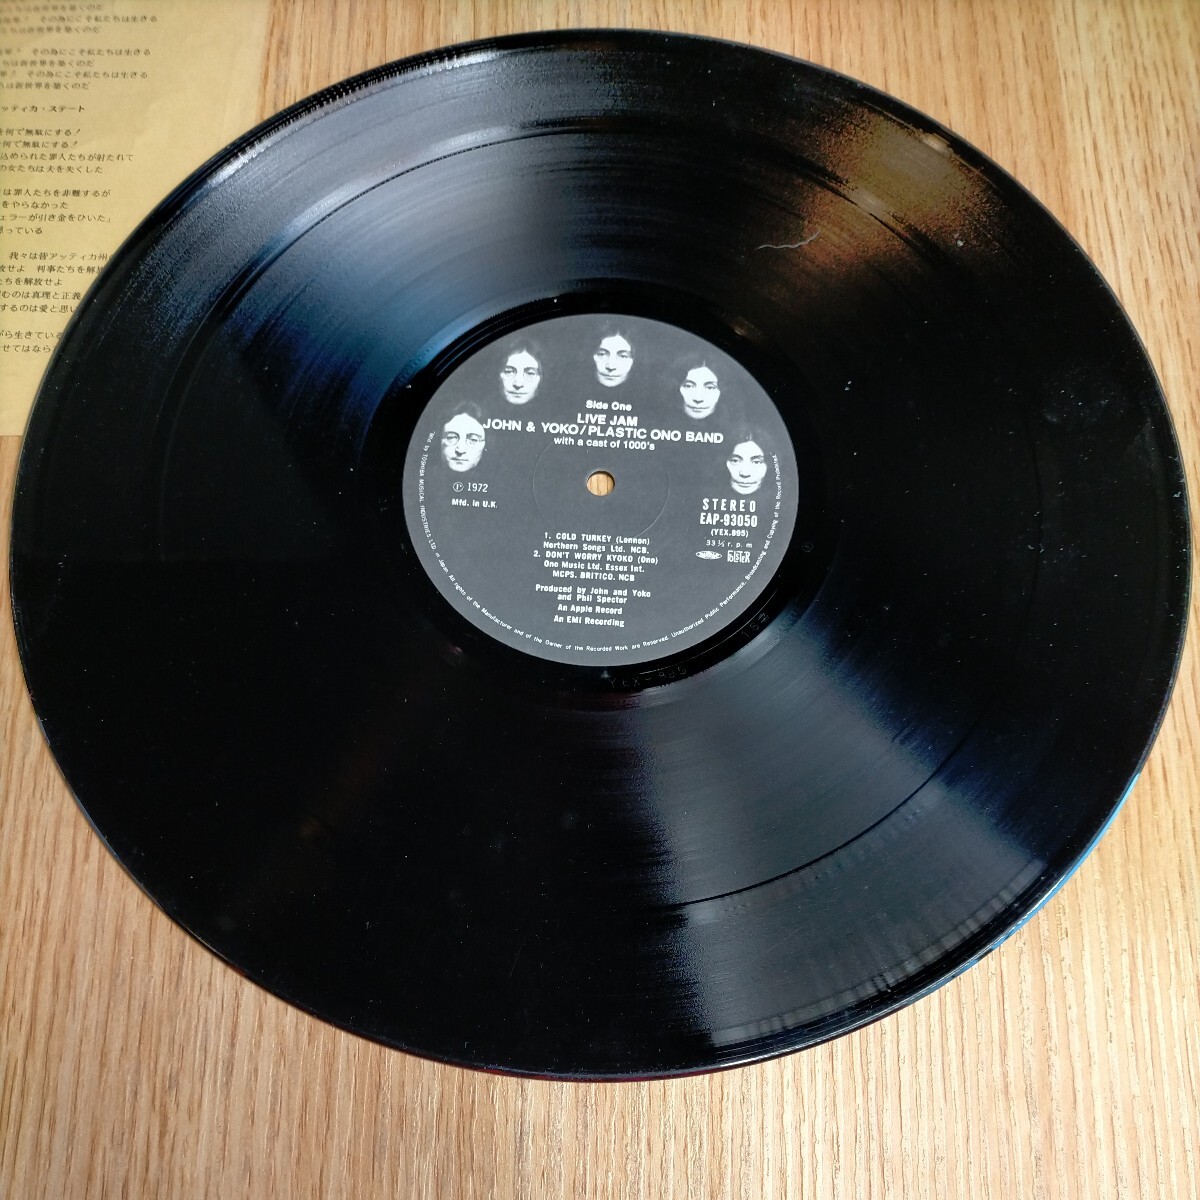 H1603 ジョンレノン オノヨーコ PLASTIC ONO BAND 2枚組 LP盤 LPレコード 洋楽 レトロ ポップス ポップ ロック バンド 送料全国一律710円_画像2